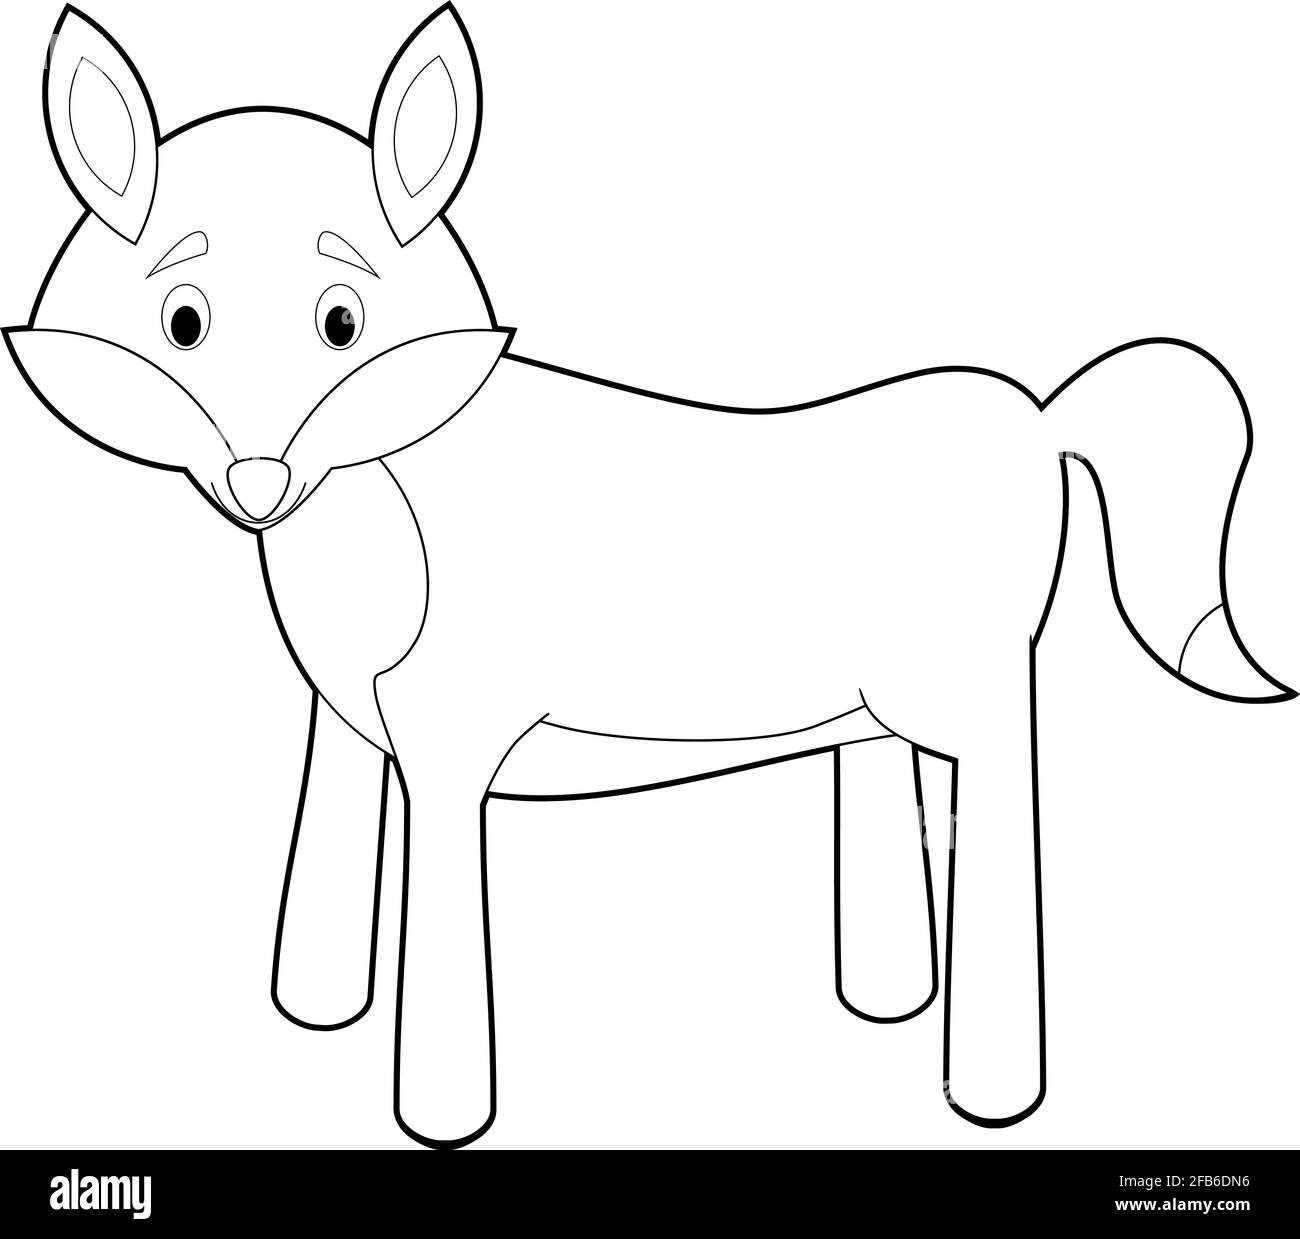 Disegni facili da colorare di animali per bambini piccoli: Lupo Immagine e  Vettoriale - Alamy